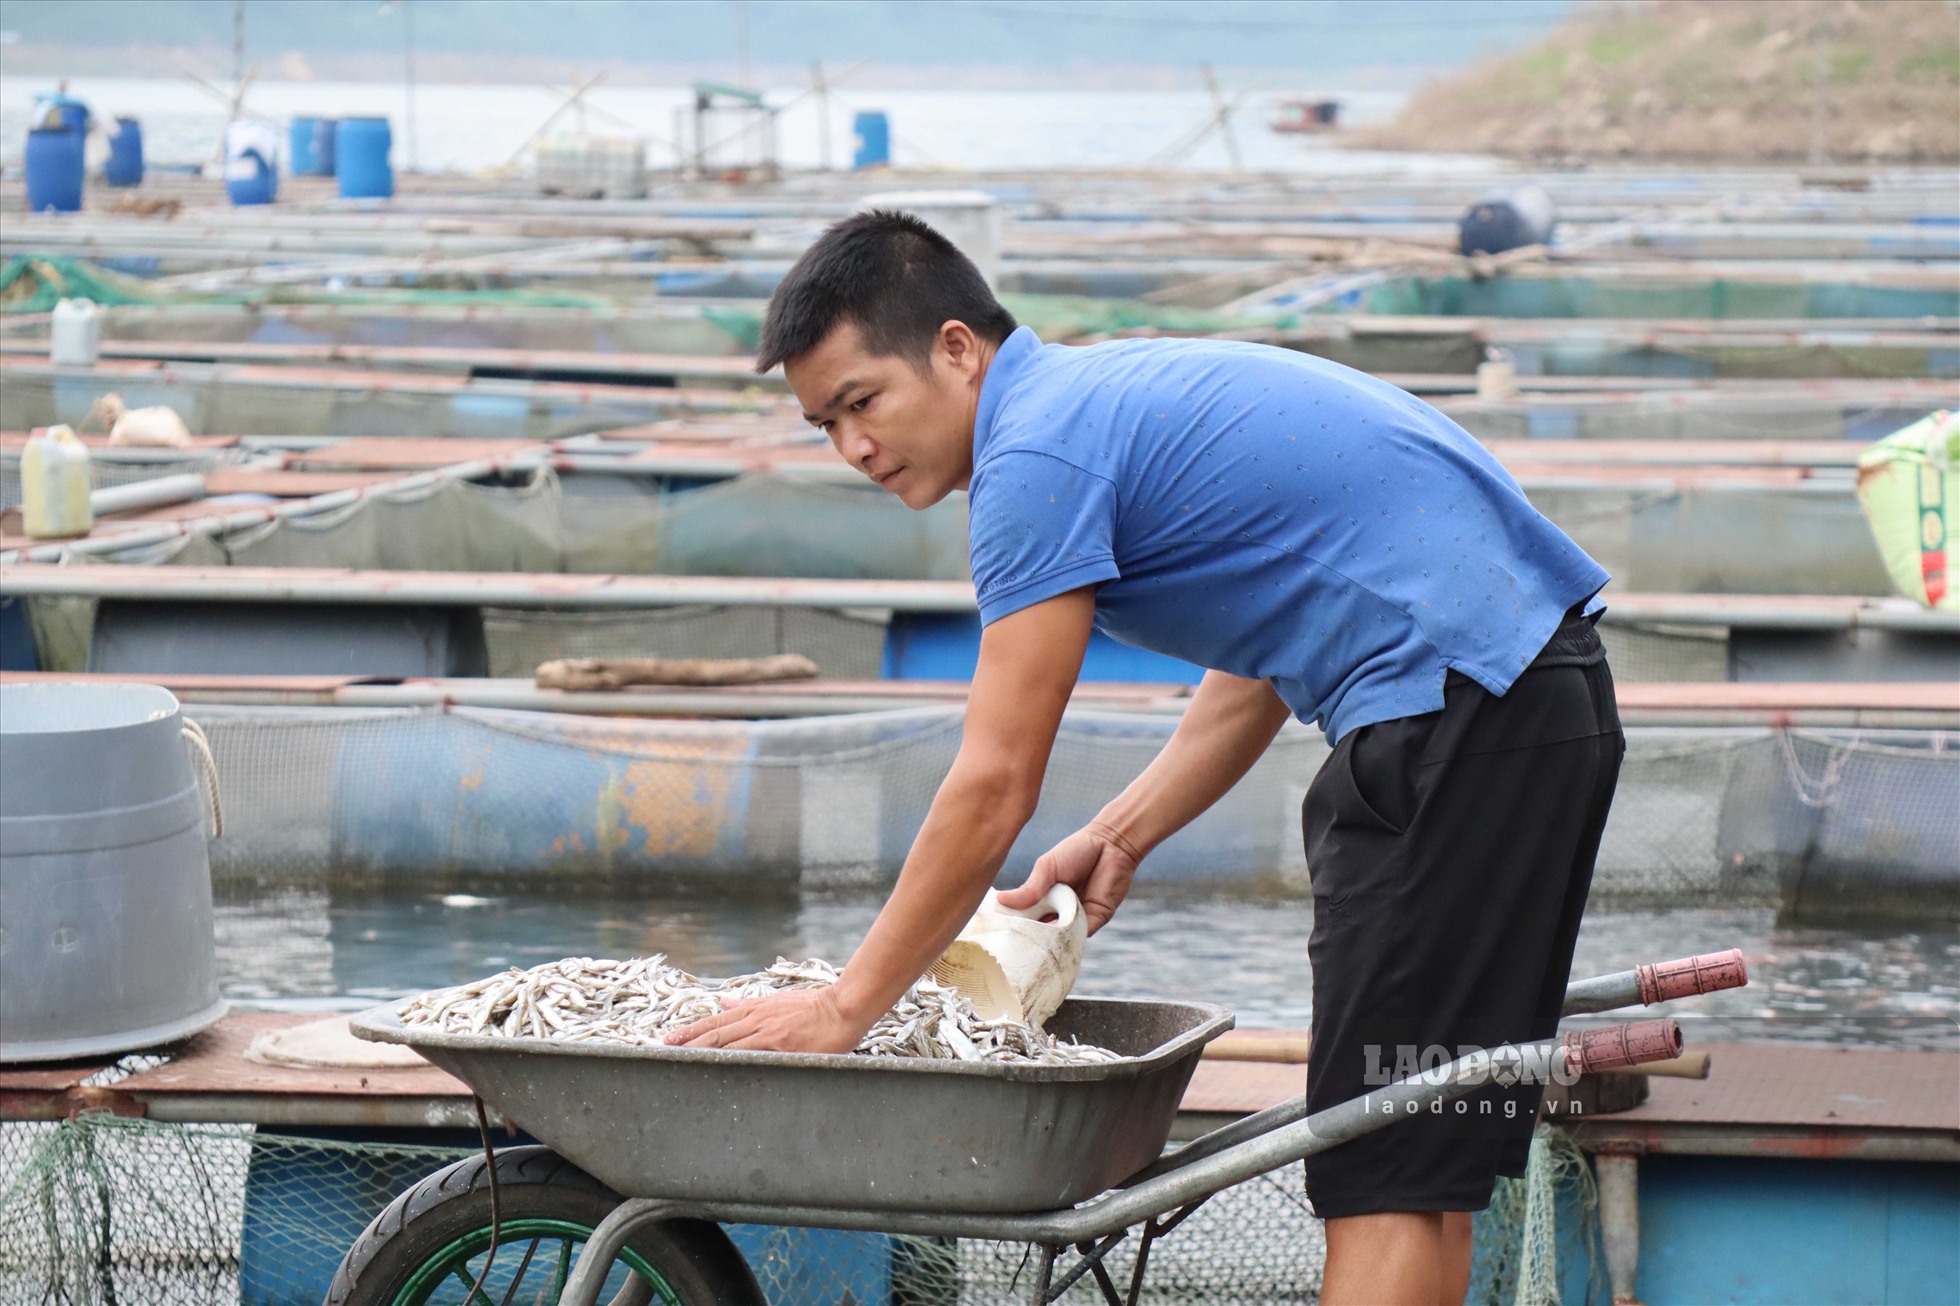 Phát triển nuôi cá lồng vùng hồ cũng đã tạo việc làm và thu nhập ổn định cho hơn 5.000 lao động. Từ đó, nâng cao chất lượng đời sống của người dân vùng lòng hồ Hòa Bình.